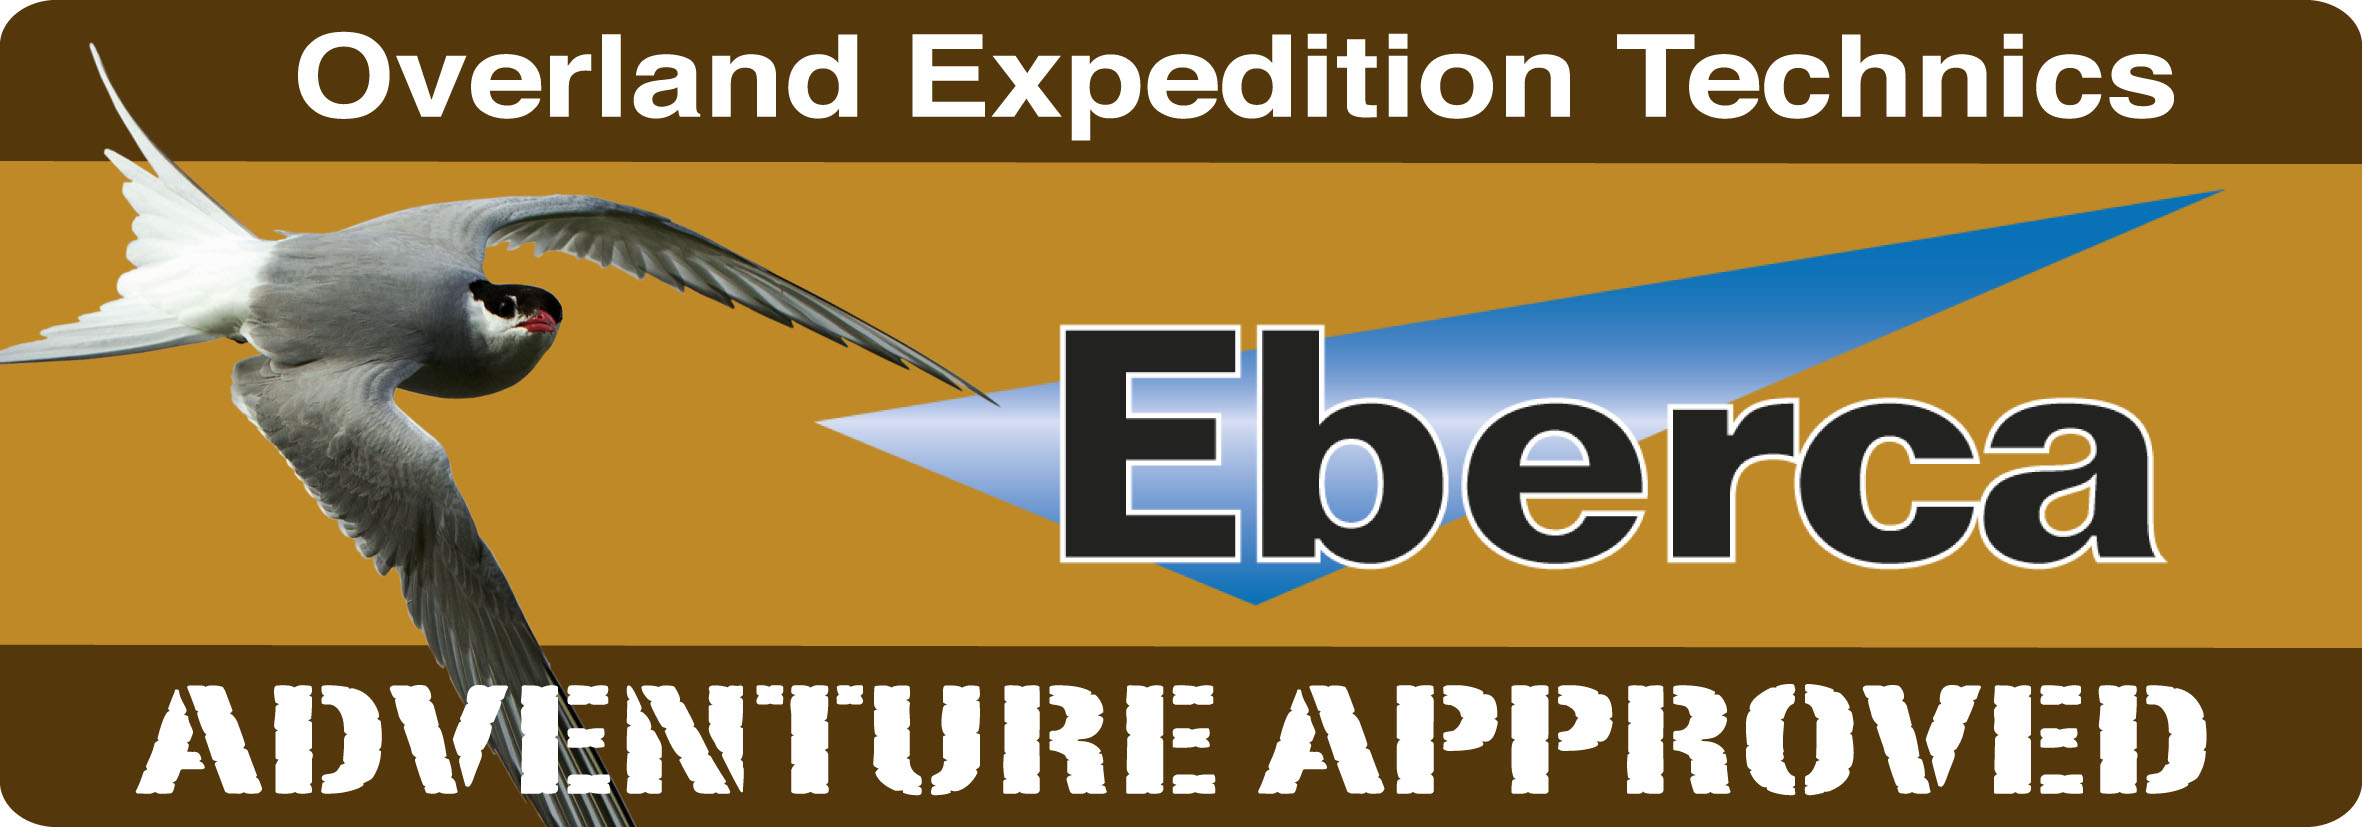 Eberca is al meer dan twintig jaar specialist op het gebied van mobiele klimaatoplossingen.